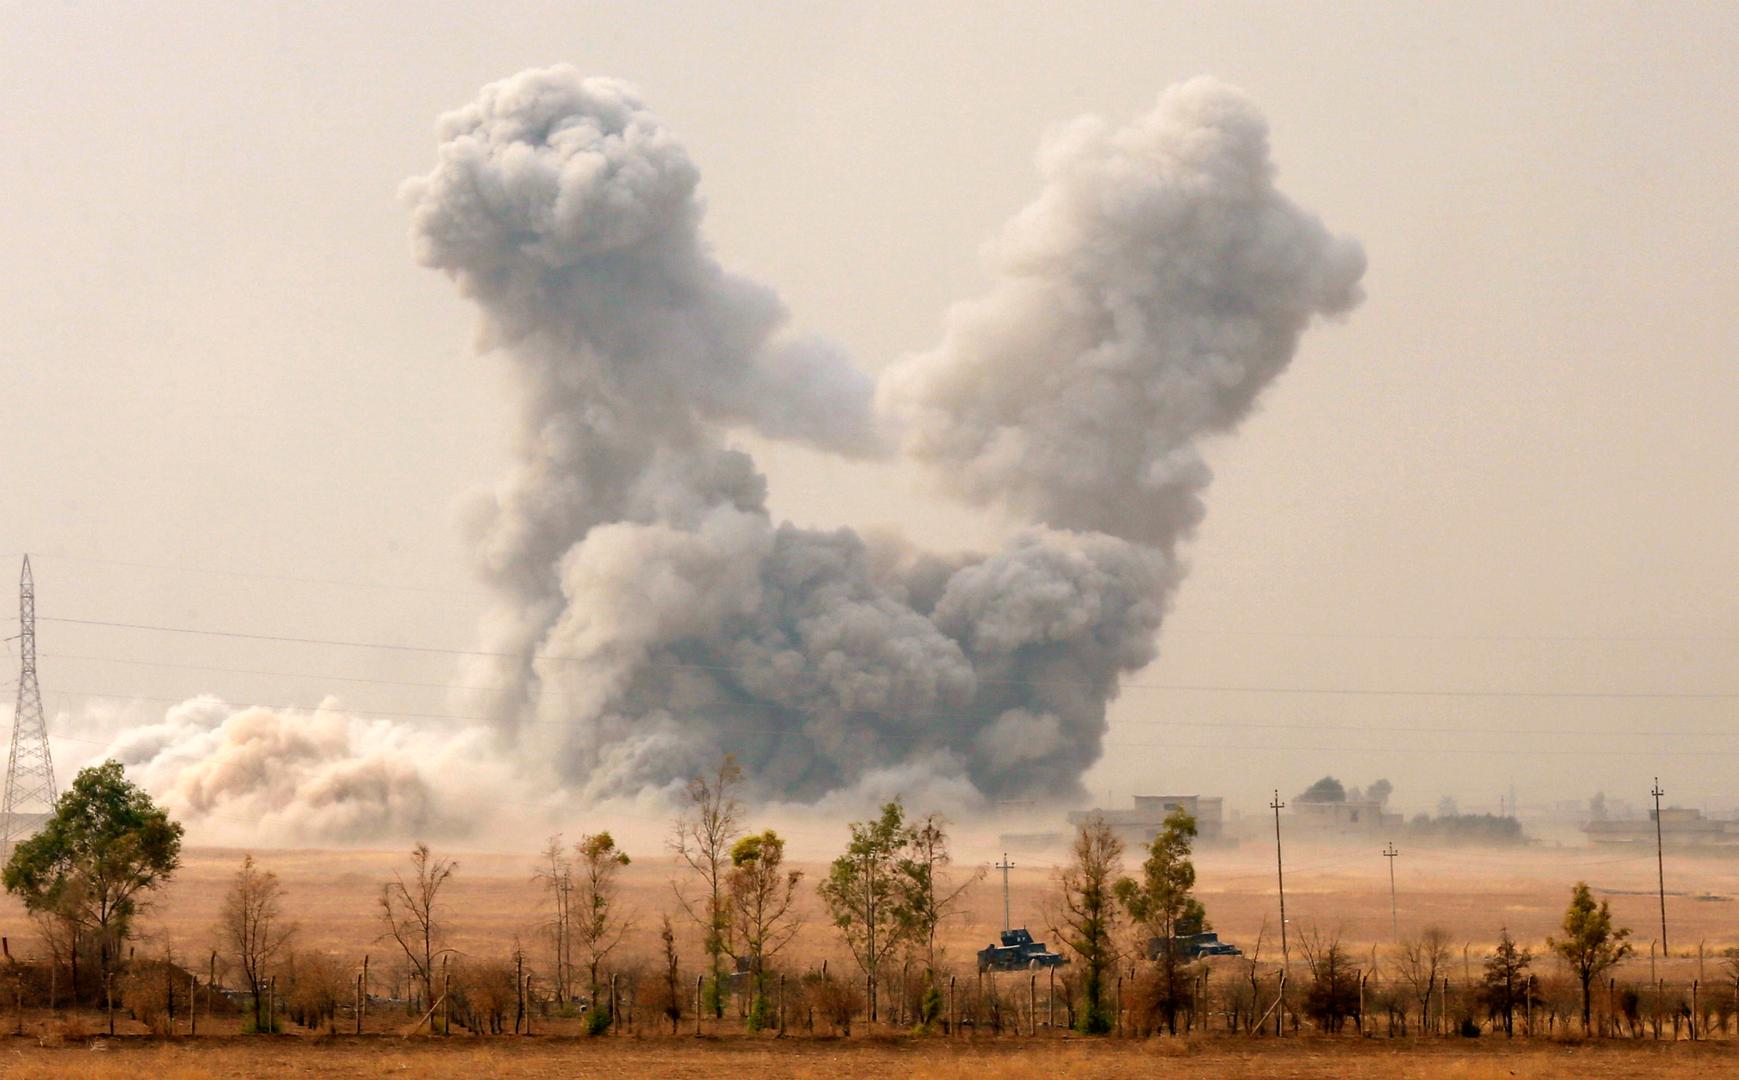 تصاعد الدخان بعد غارة أمريكية خلال العملية العسكرية ضد مقاتلي تنظيم "الدولة الإسلامية" قرب الموصل، العراق، 24 أكتوبر/تشرين الأول 2016. © 2016 رويترز 